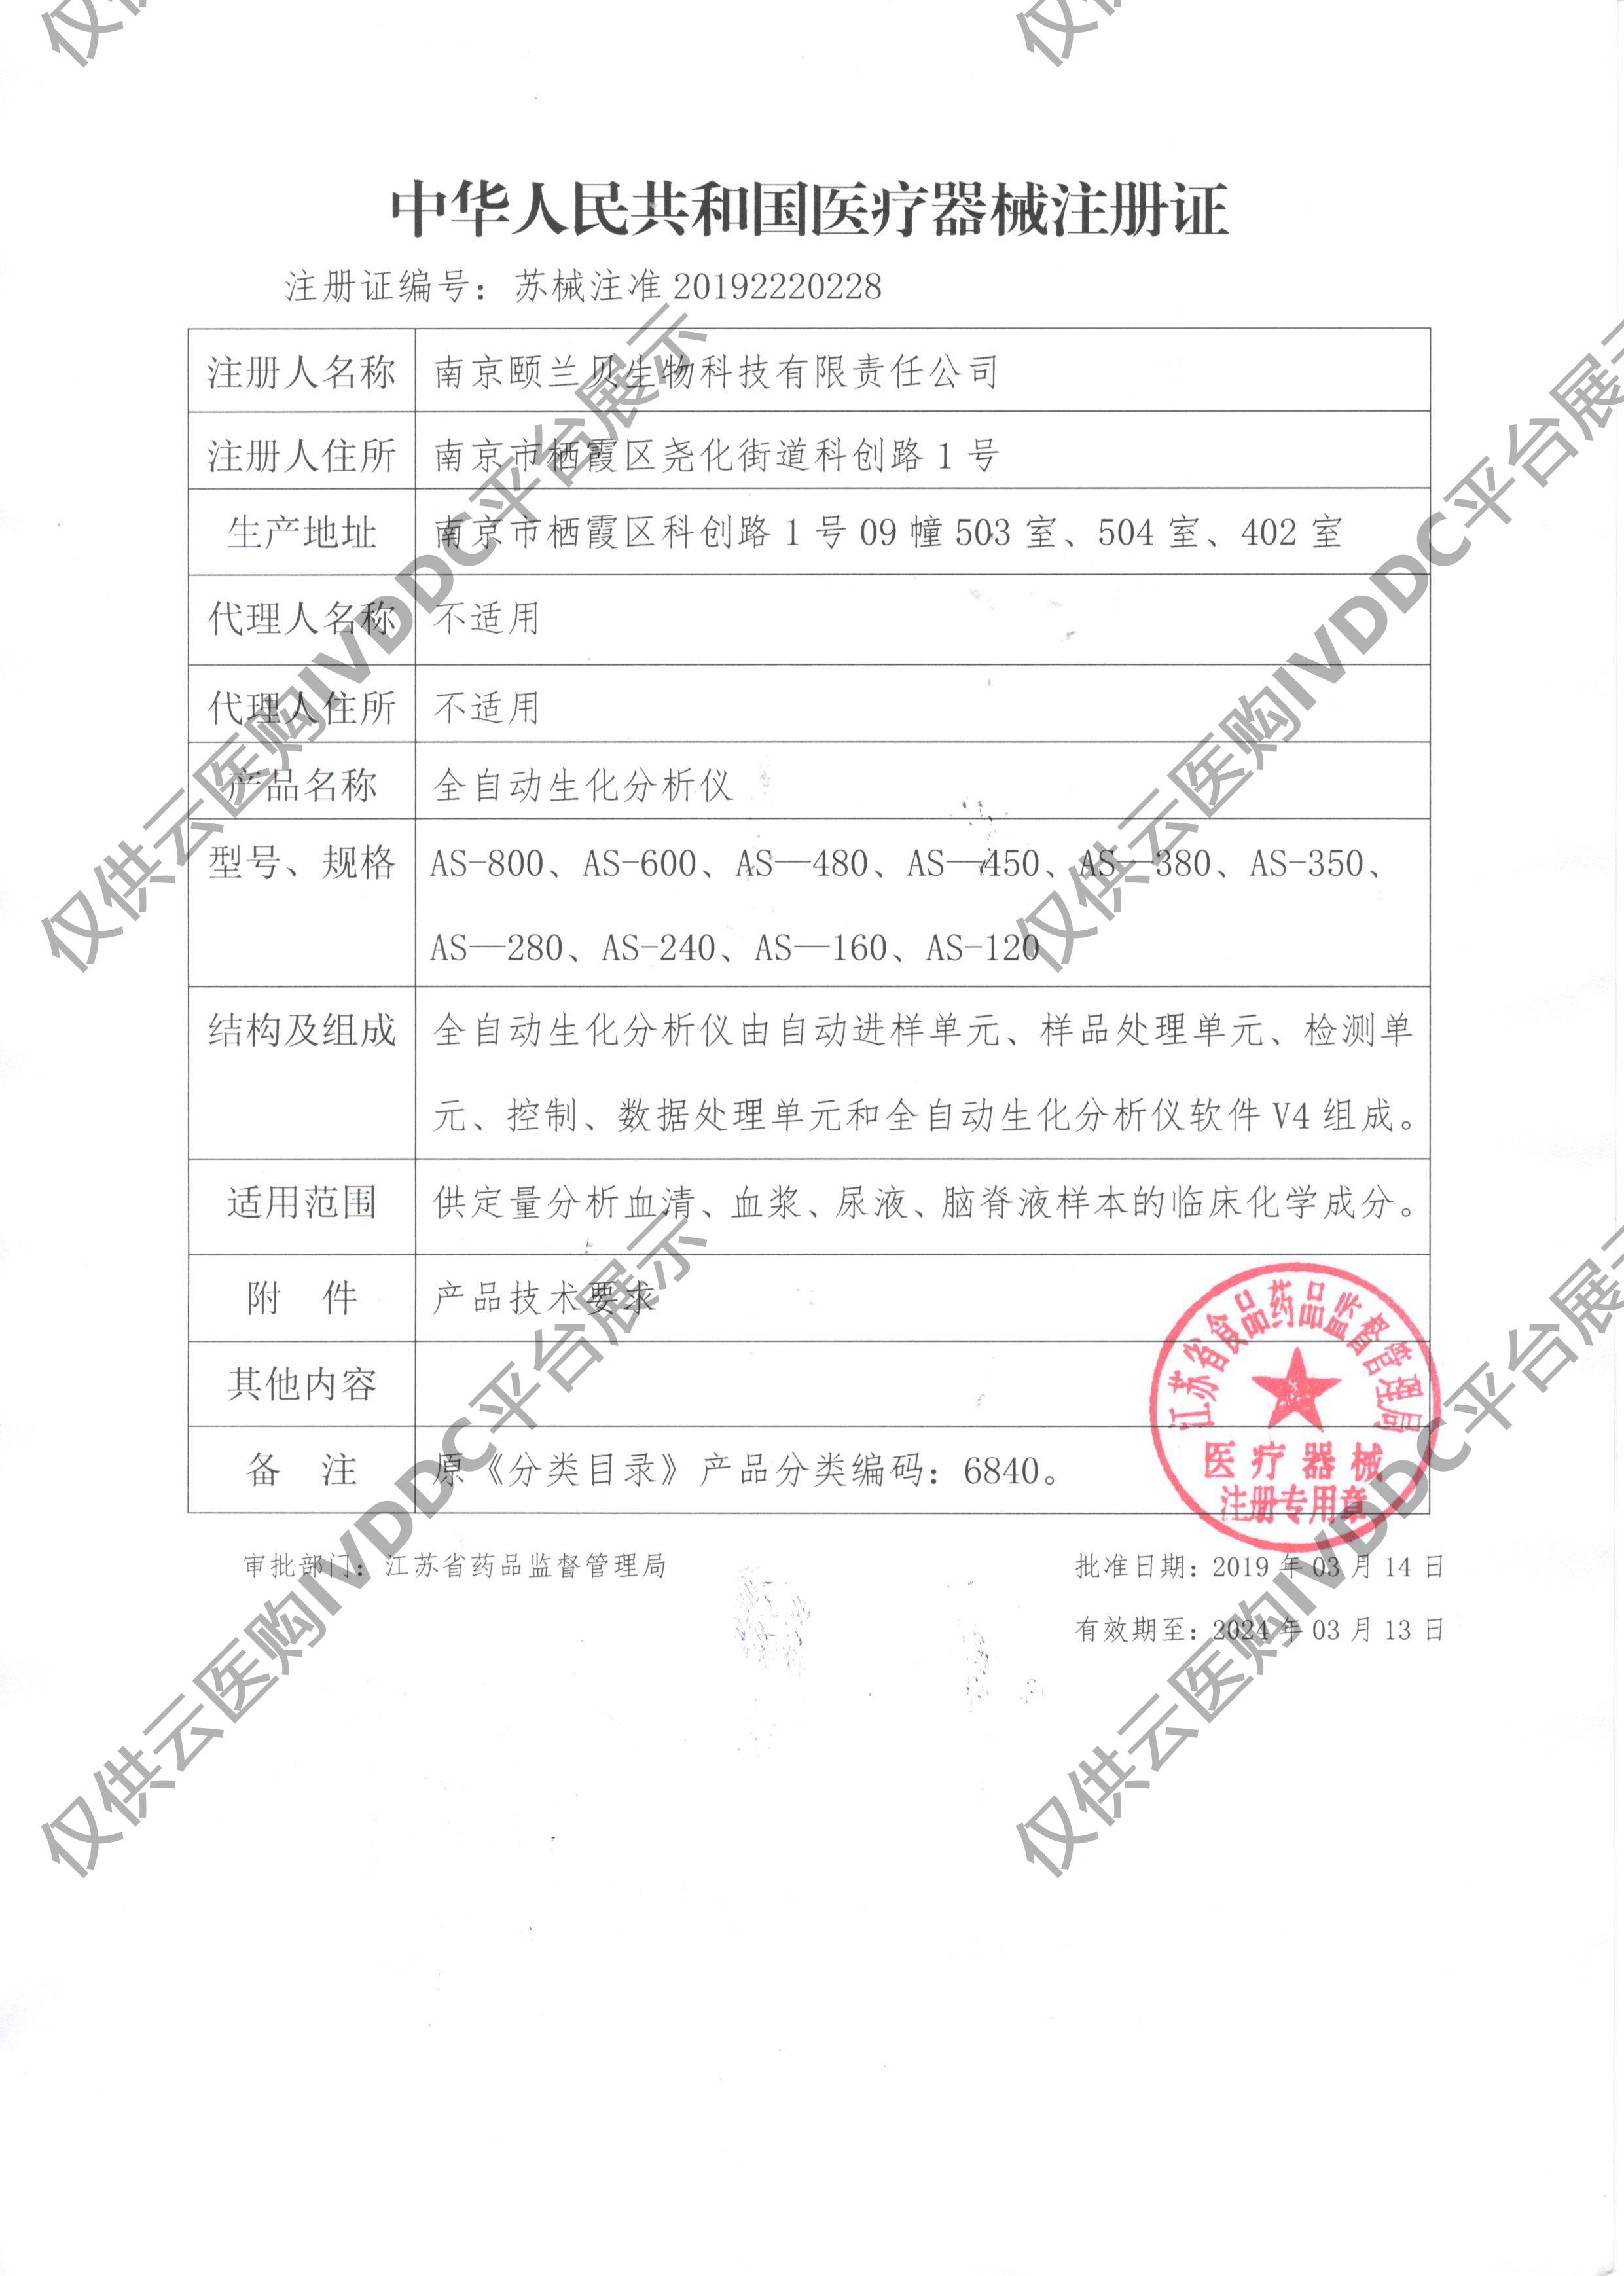 【颐兰贝】全自动生化分析仪 AS-120注册证